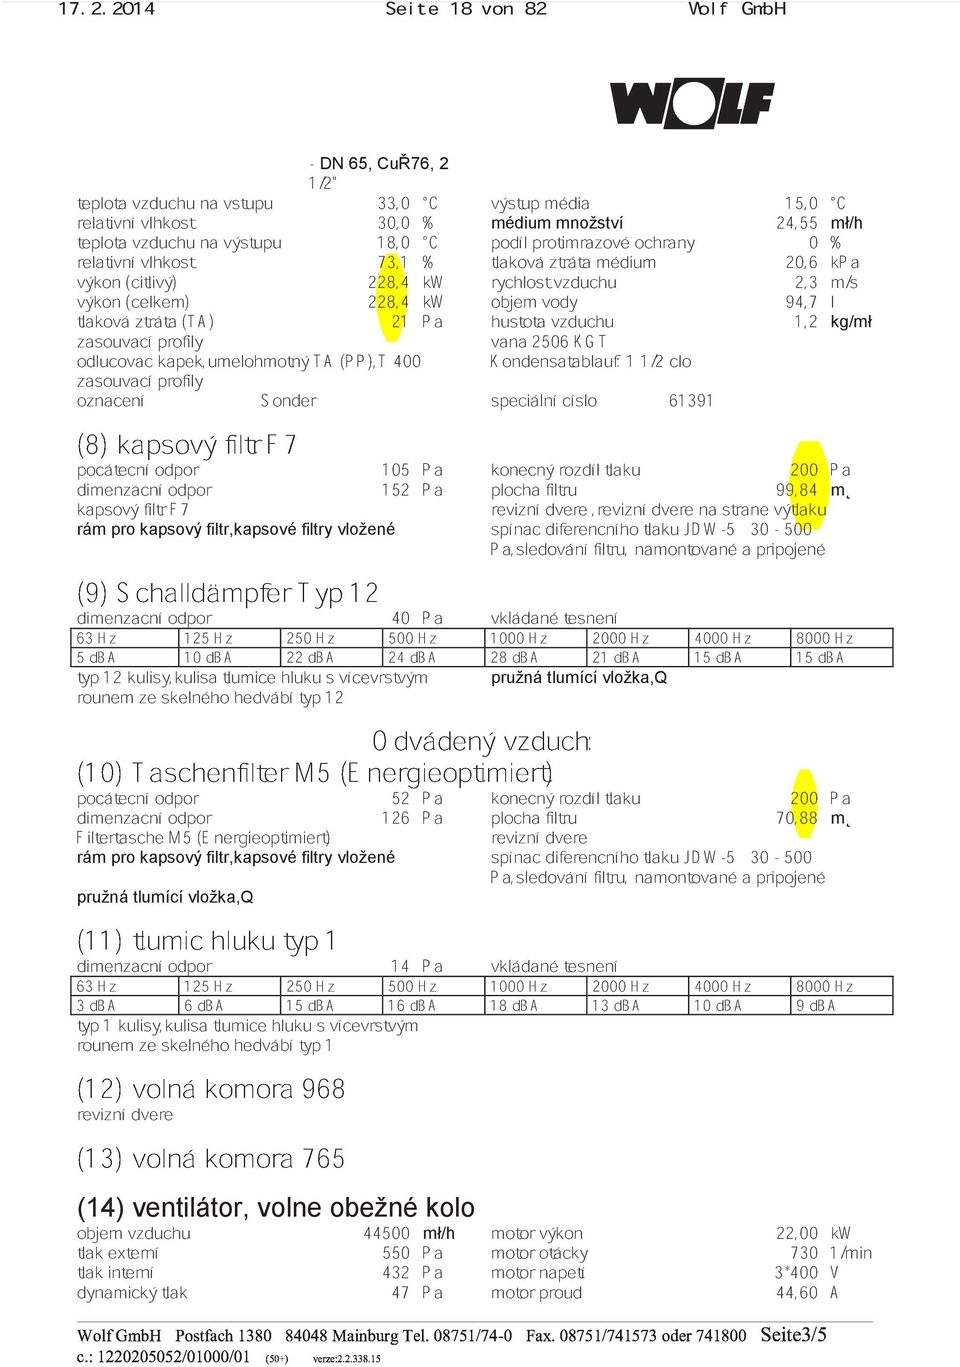 kapek,umelohmotný profily TA (PP),T 400 vana Kondensatablauf: 2506 KGT 11/2 clo kg/mł zasouvací oznacení profily (8) kapsový filtr Sonder F7 speciální císlo 61391 pocátecní dimenzacní odpor odpor 152